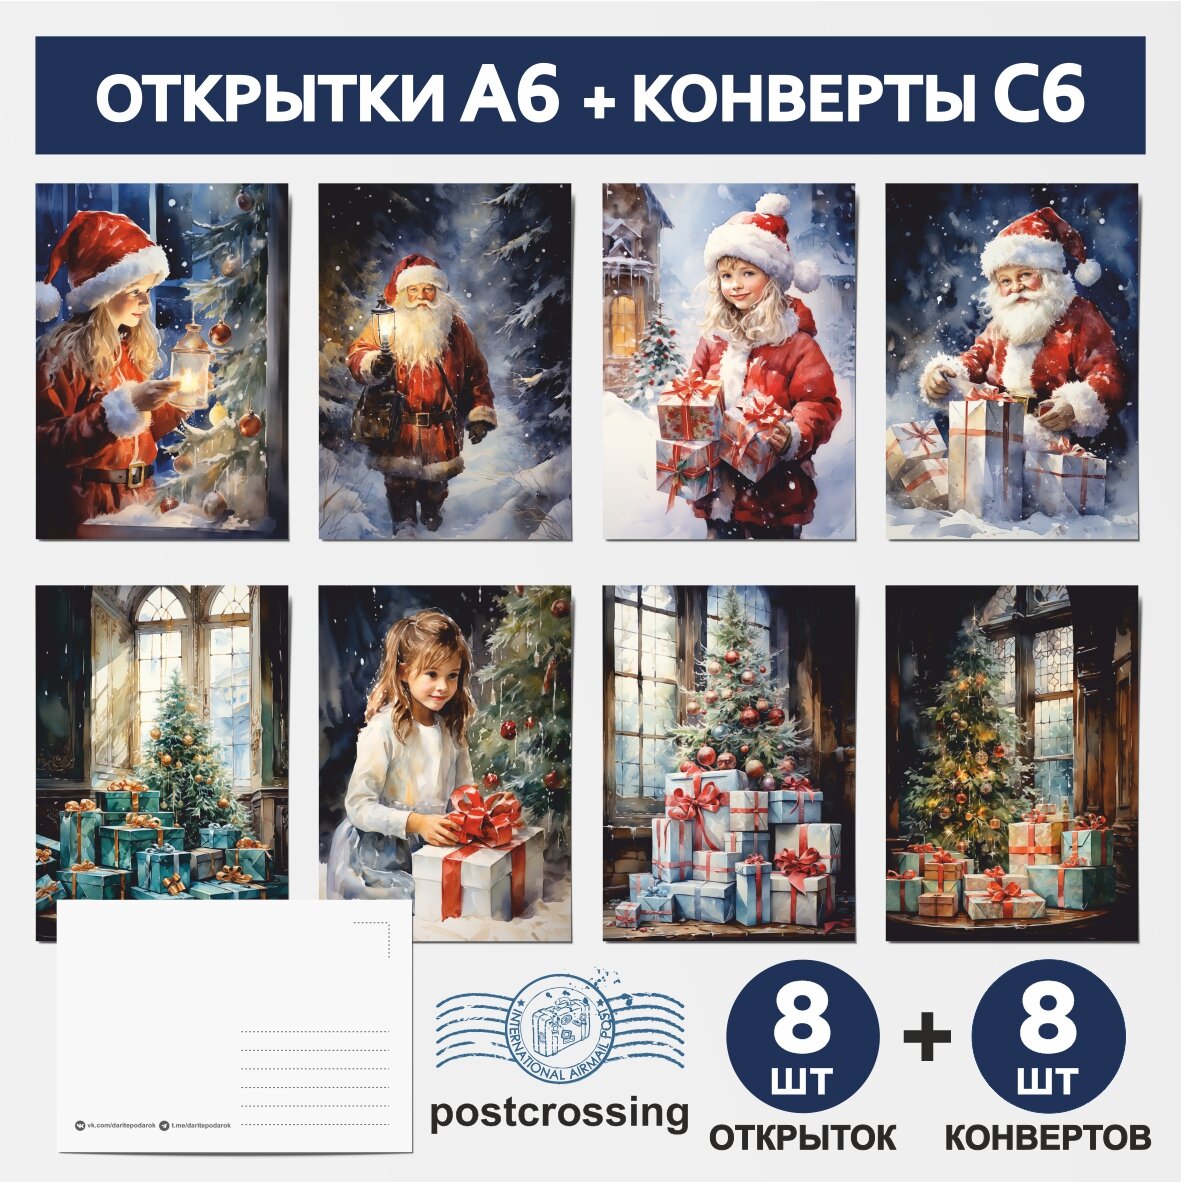 Набор: открытки А6 - 8 шт, крафт-конверт С6 - 8 шт, почтовые открытки для подарков на Рождество, Новый год №25, postcard_8_postcrossing_A6_set_25